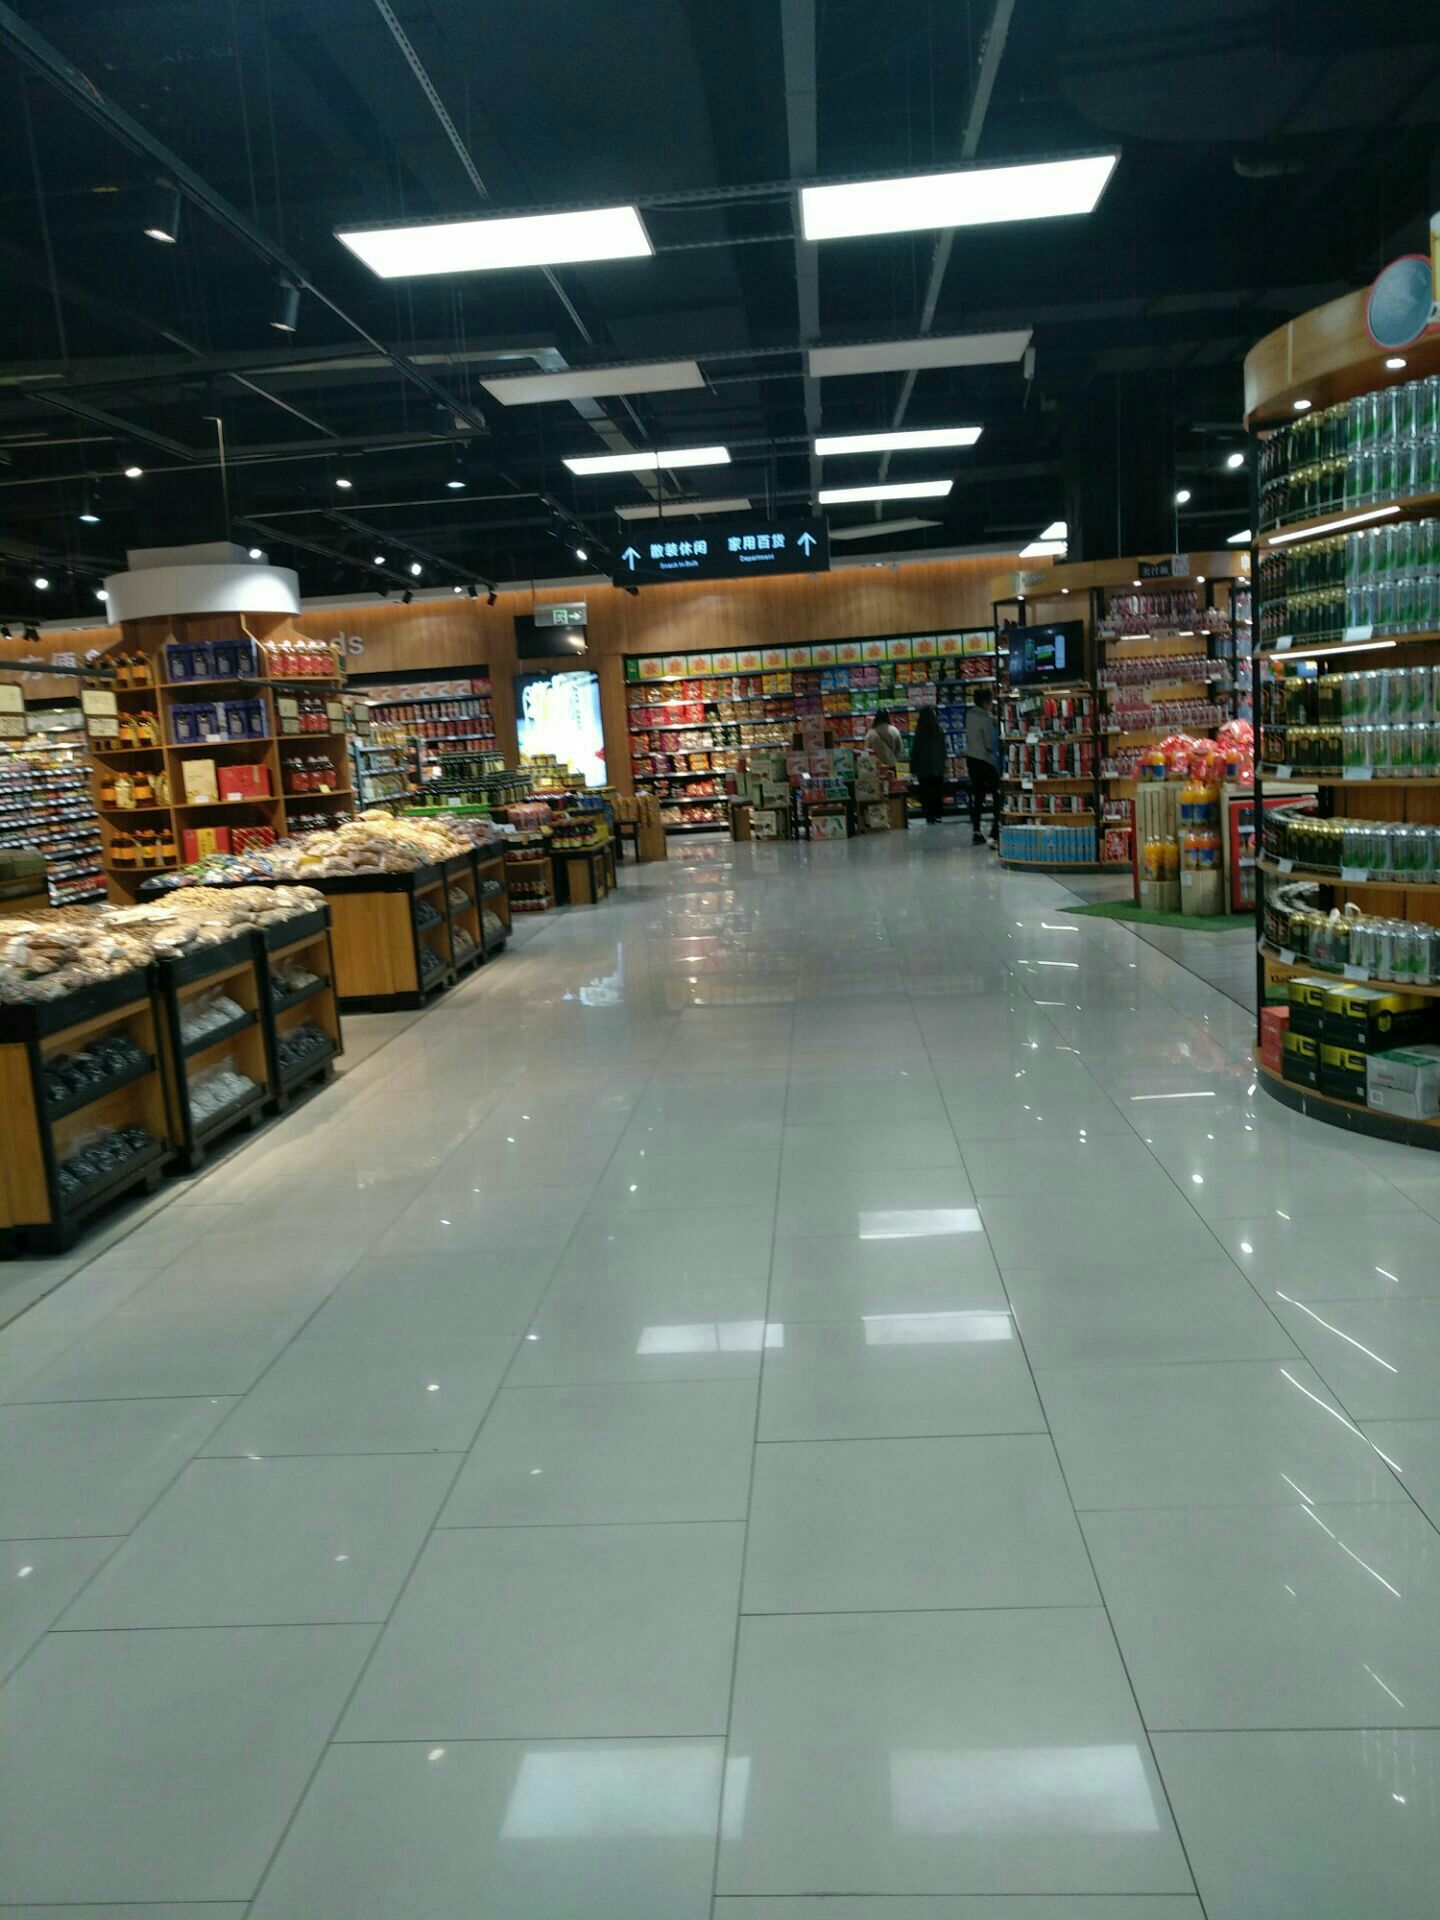 阳谷振华超市图片